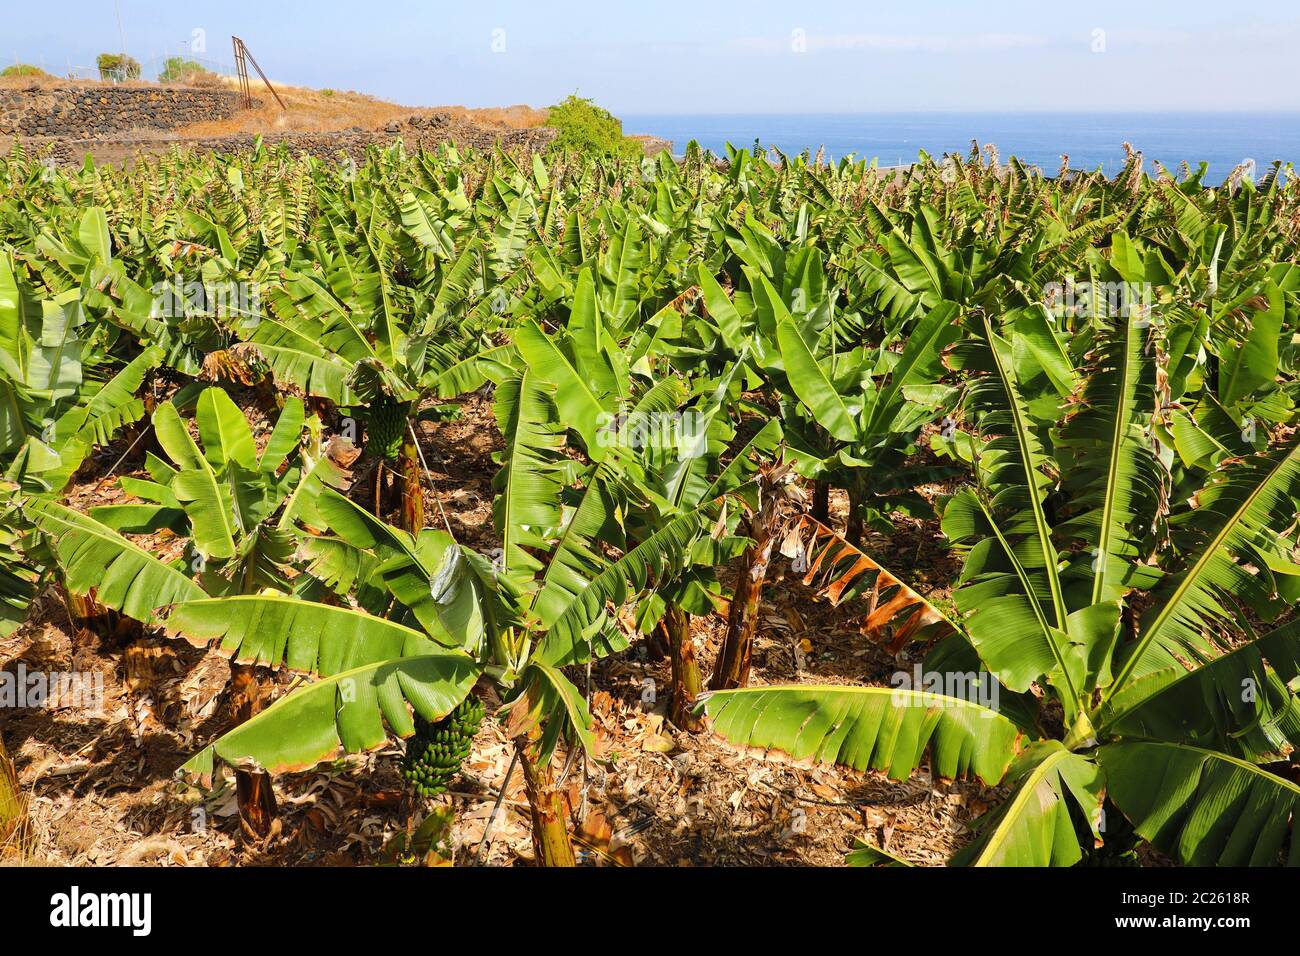 Plantation of bananas in Tenerife, Canary Islands Stock Photo